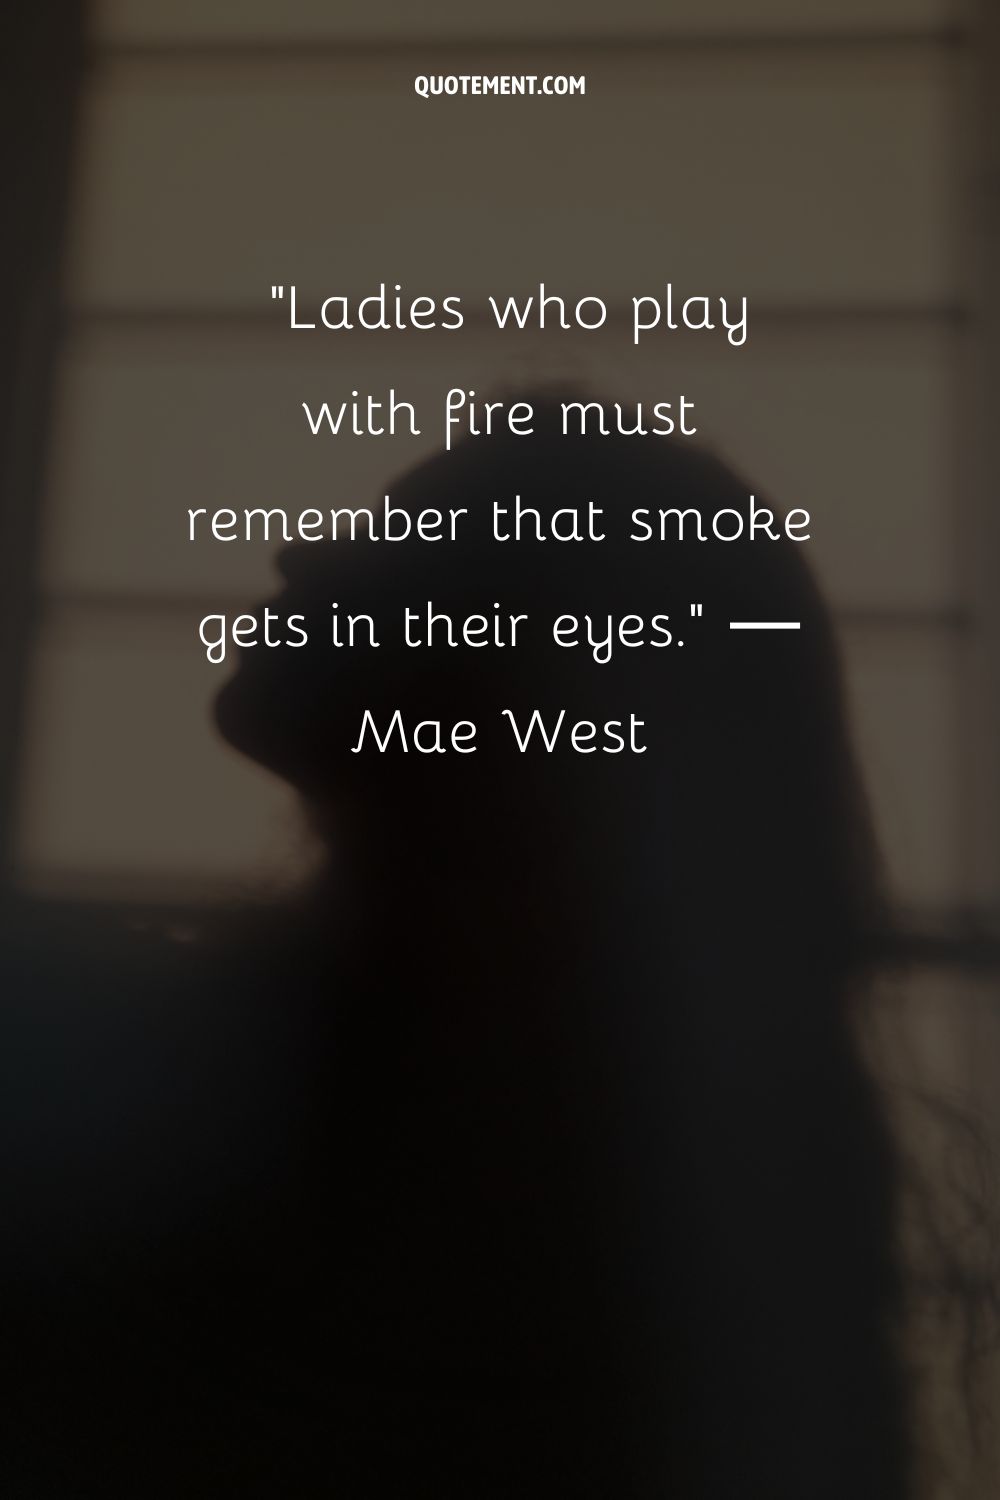 Las damas que juegan con fuego deben recordar que el humo les entra en los ojos